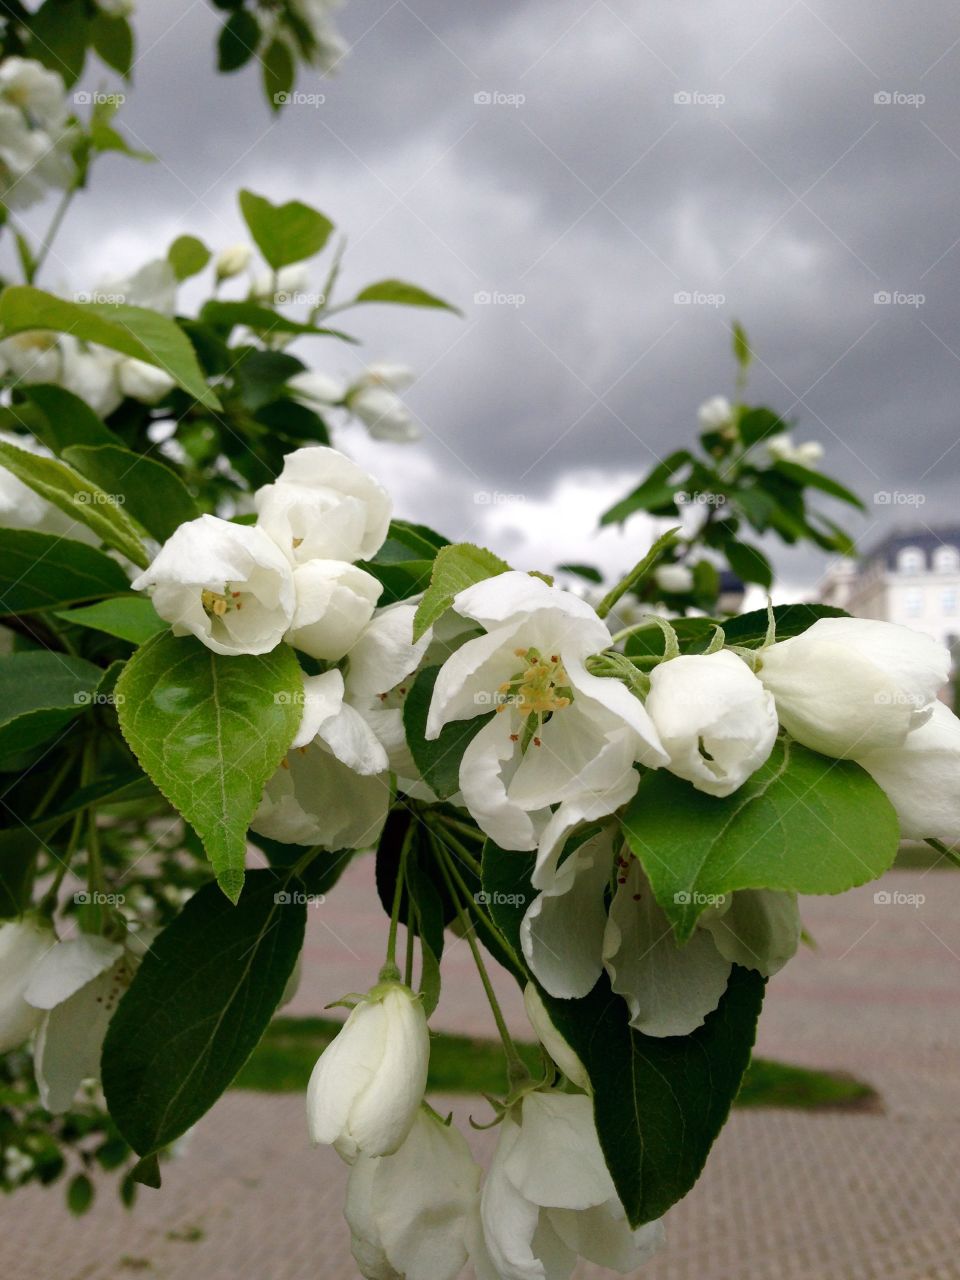 Flowering tree. Flowering apple tree on cloudy sky background 